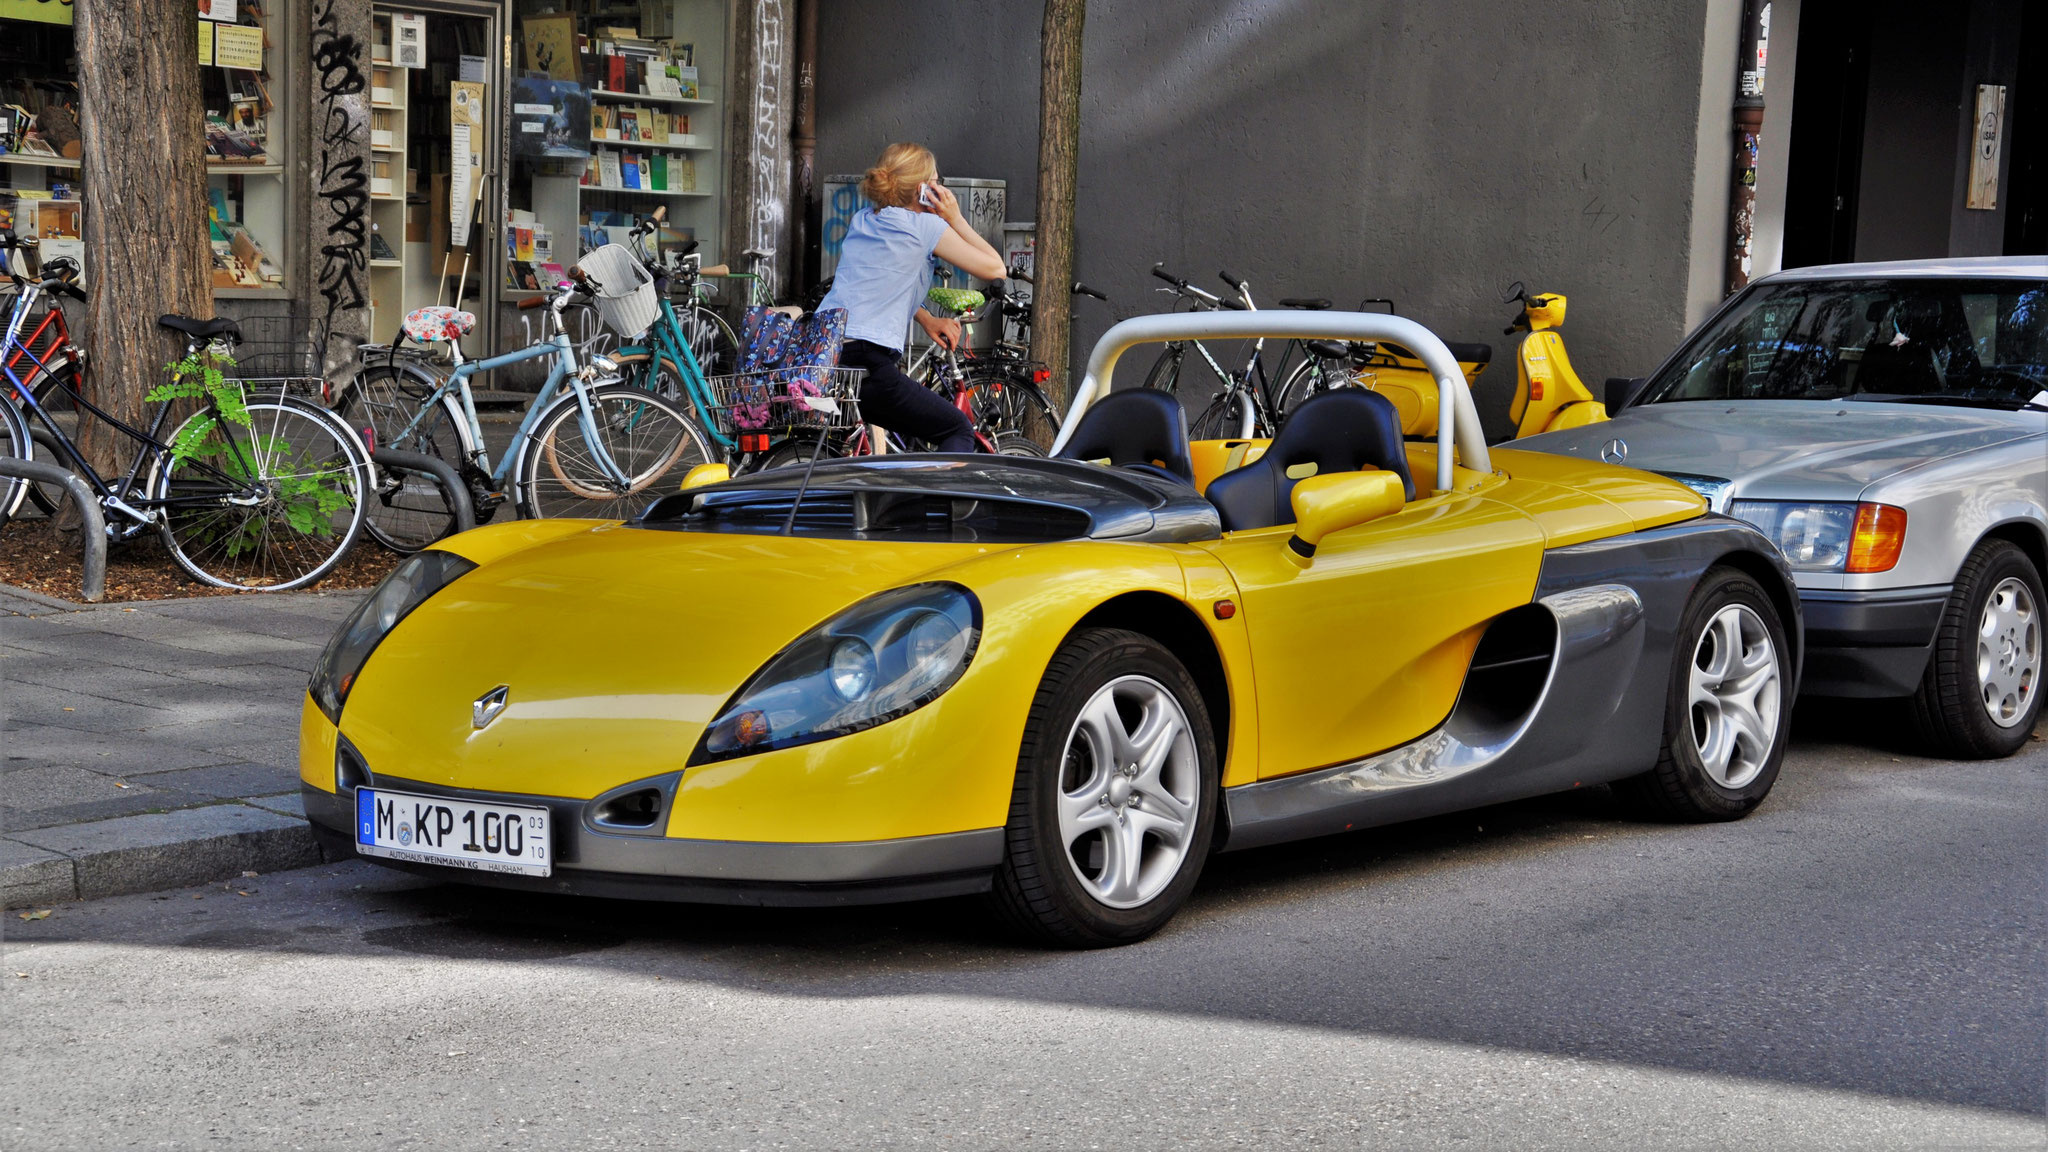 Renault Sport Spider - M-KP100